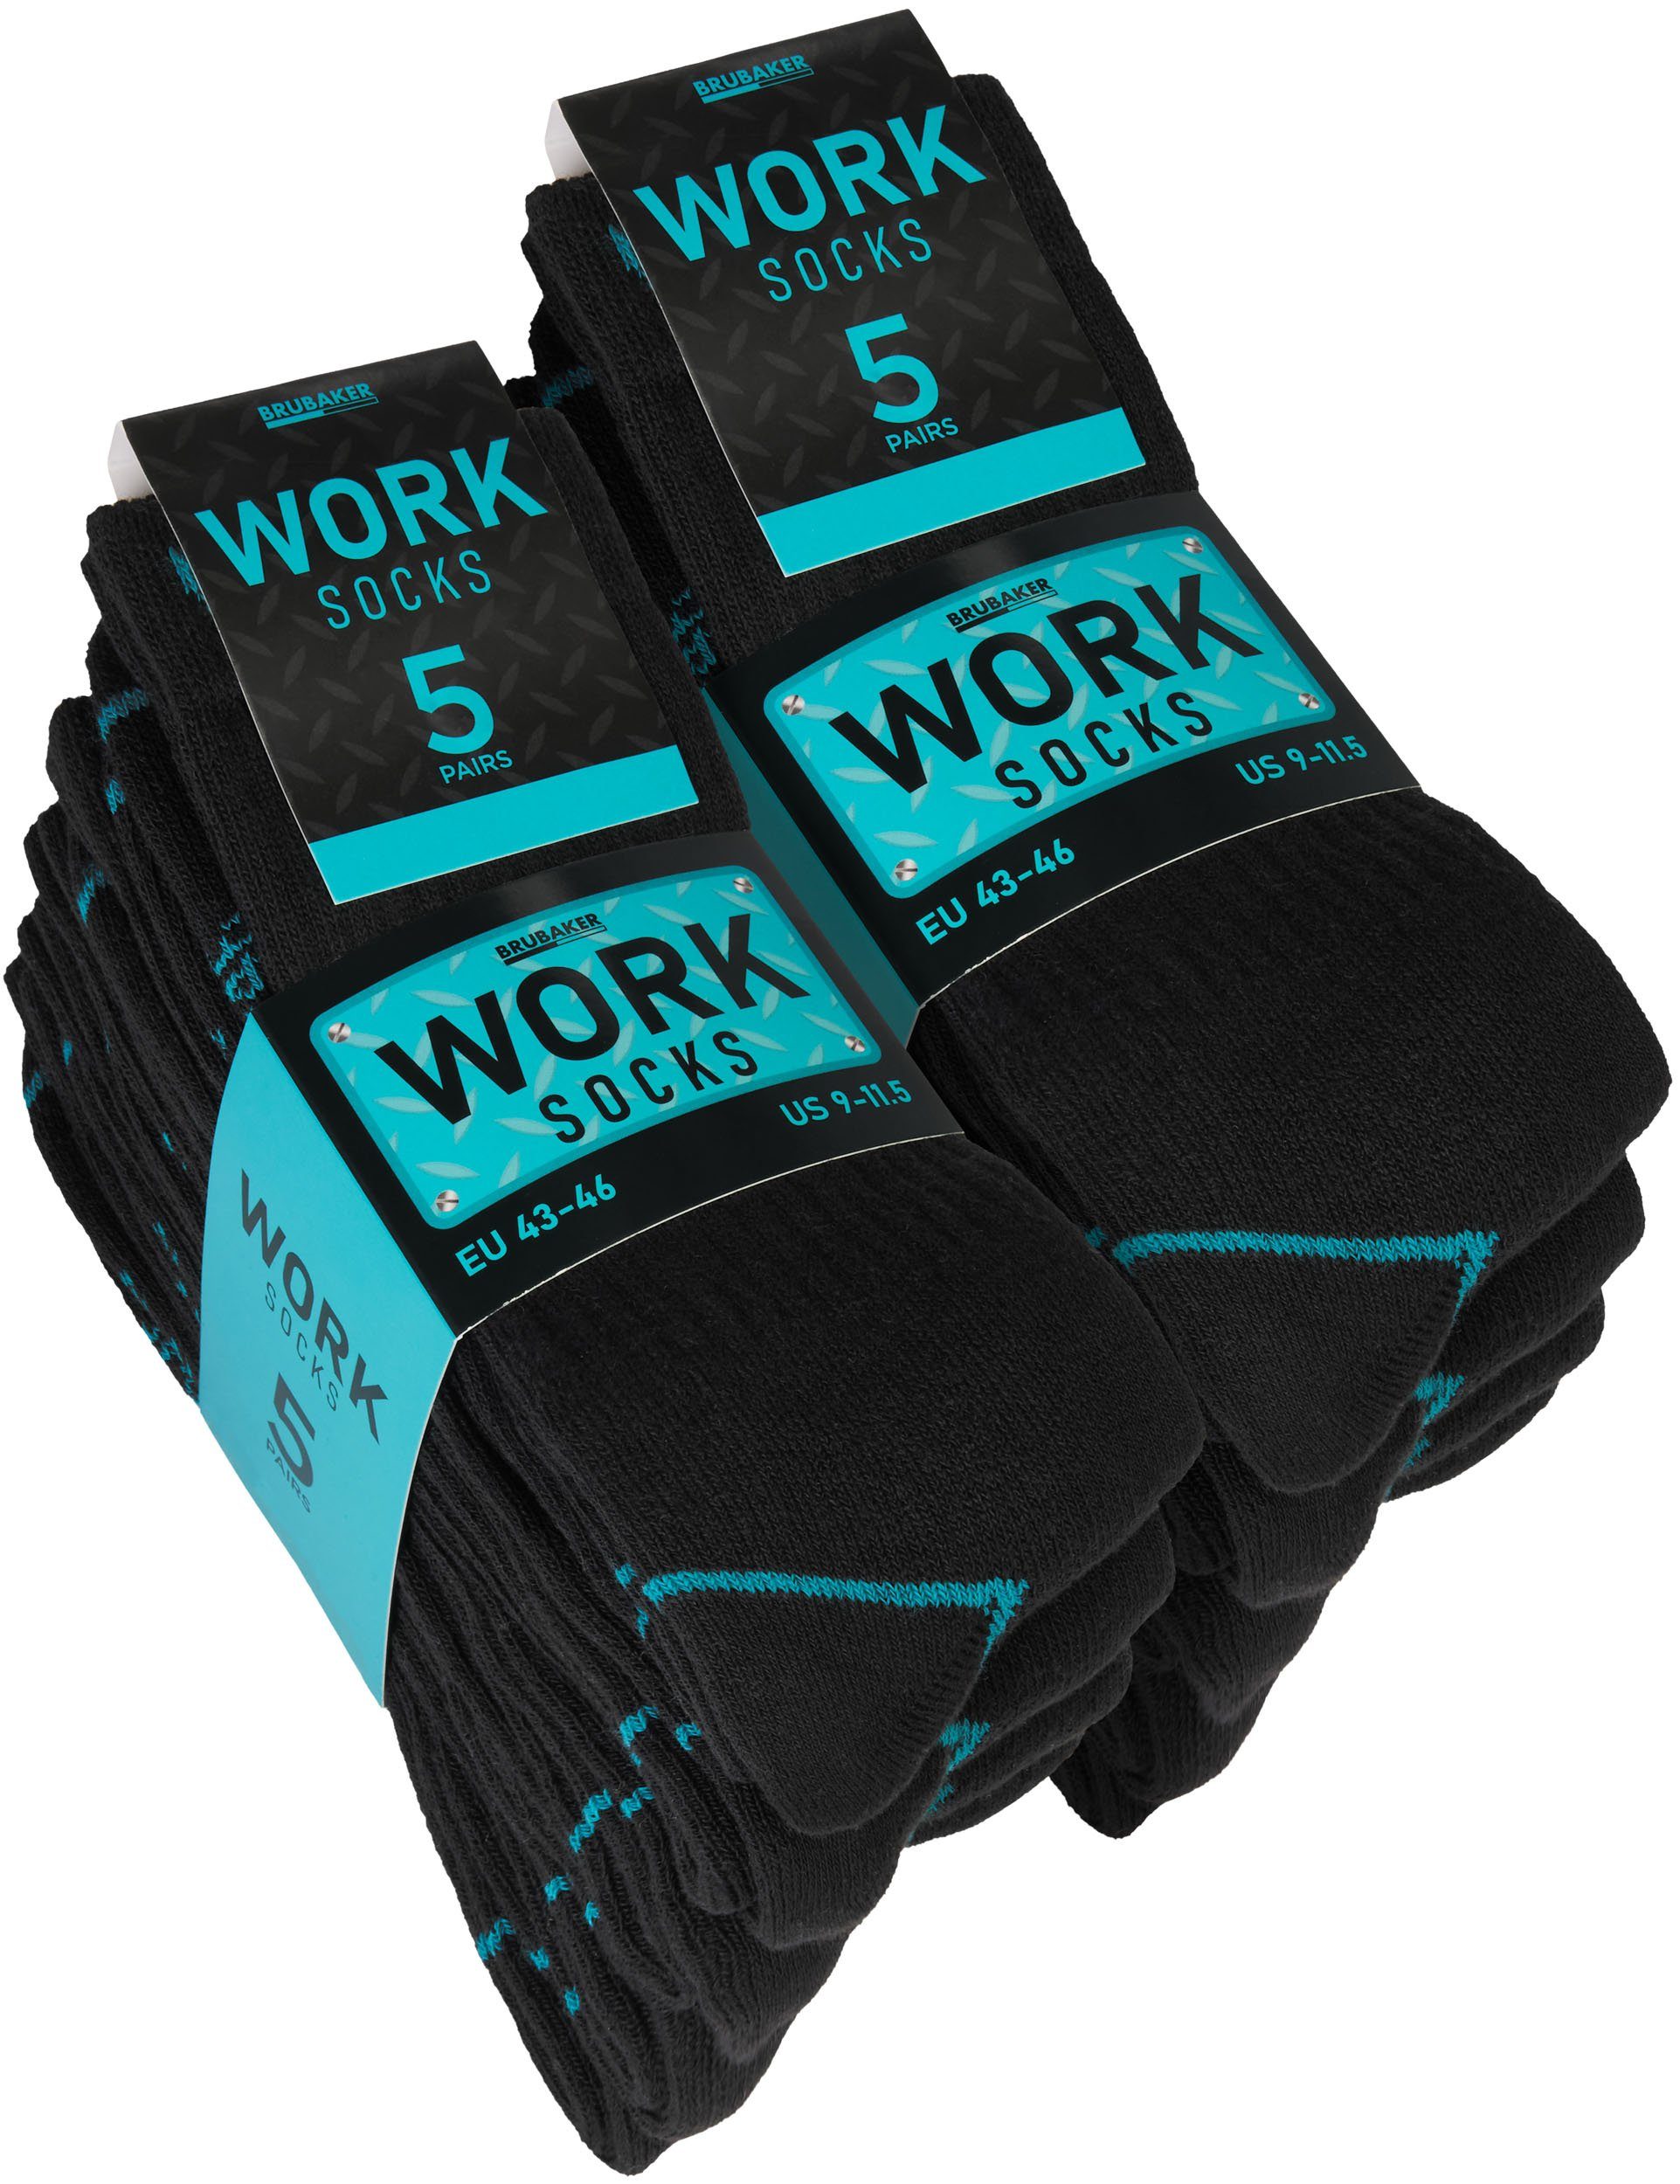 BRUBAKER Arbeitssocken für Herren - 10 oder 20 Paar Work Socken - Schwarz Türkis (Verstärkter Fersen und Zehenbereich, 10-Paar, Work Socks Arbeitssocken aus Baumwolle) Robuste Funktionssocken für optimalen Halt auf der Arbeit